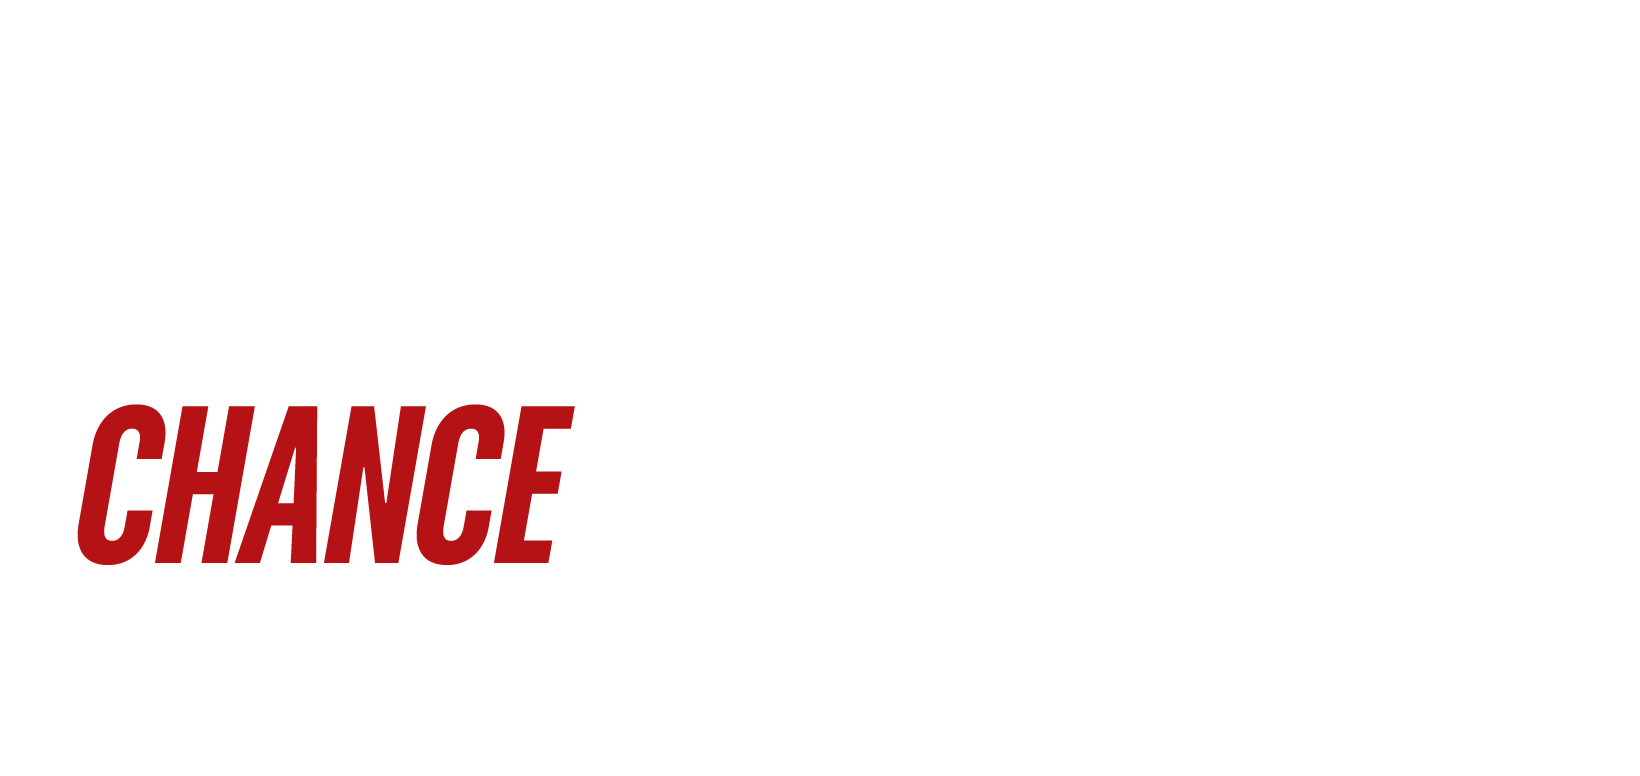 Triple Chance Penalty Shootout